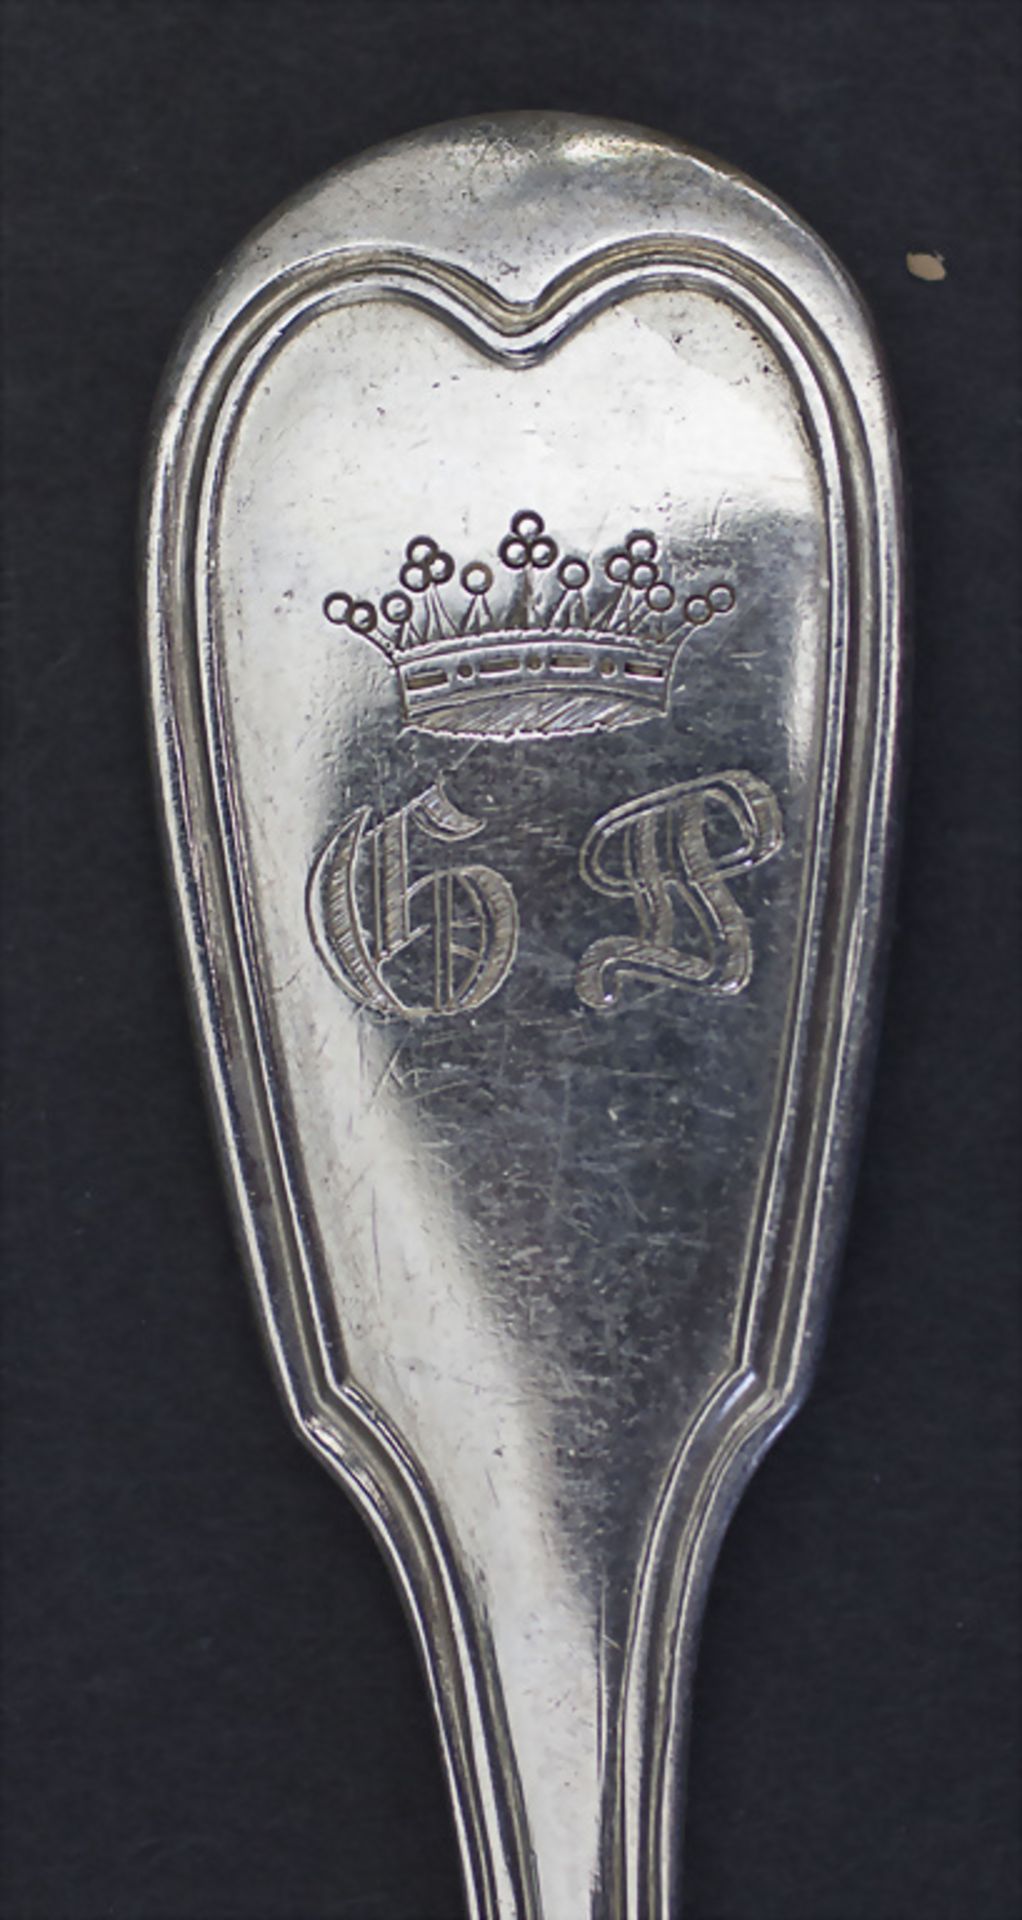 24-tlg. Silberbesteck / A 24-piece set of silver cutlery, Louis Nicolas Alban, Paris, 1834-1839 - Image 4 of 7